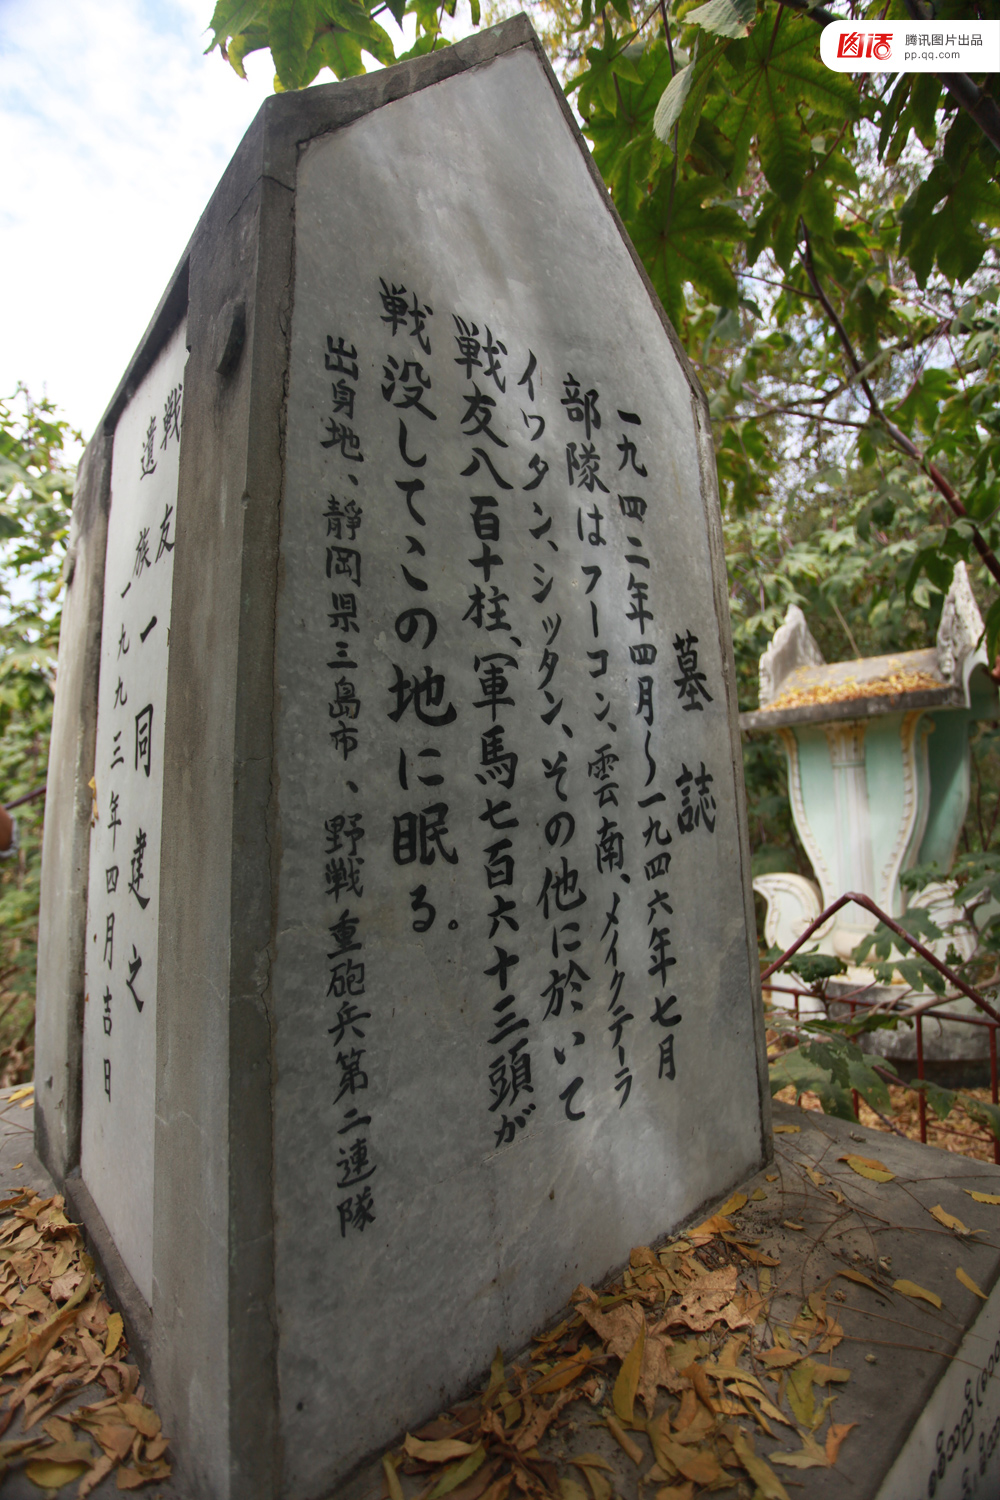 缅甸仰光Taukkyan战争墓园24